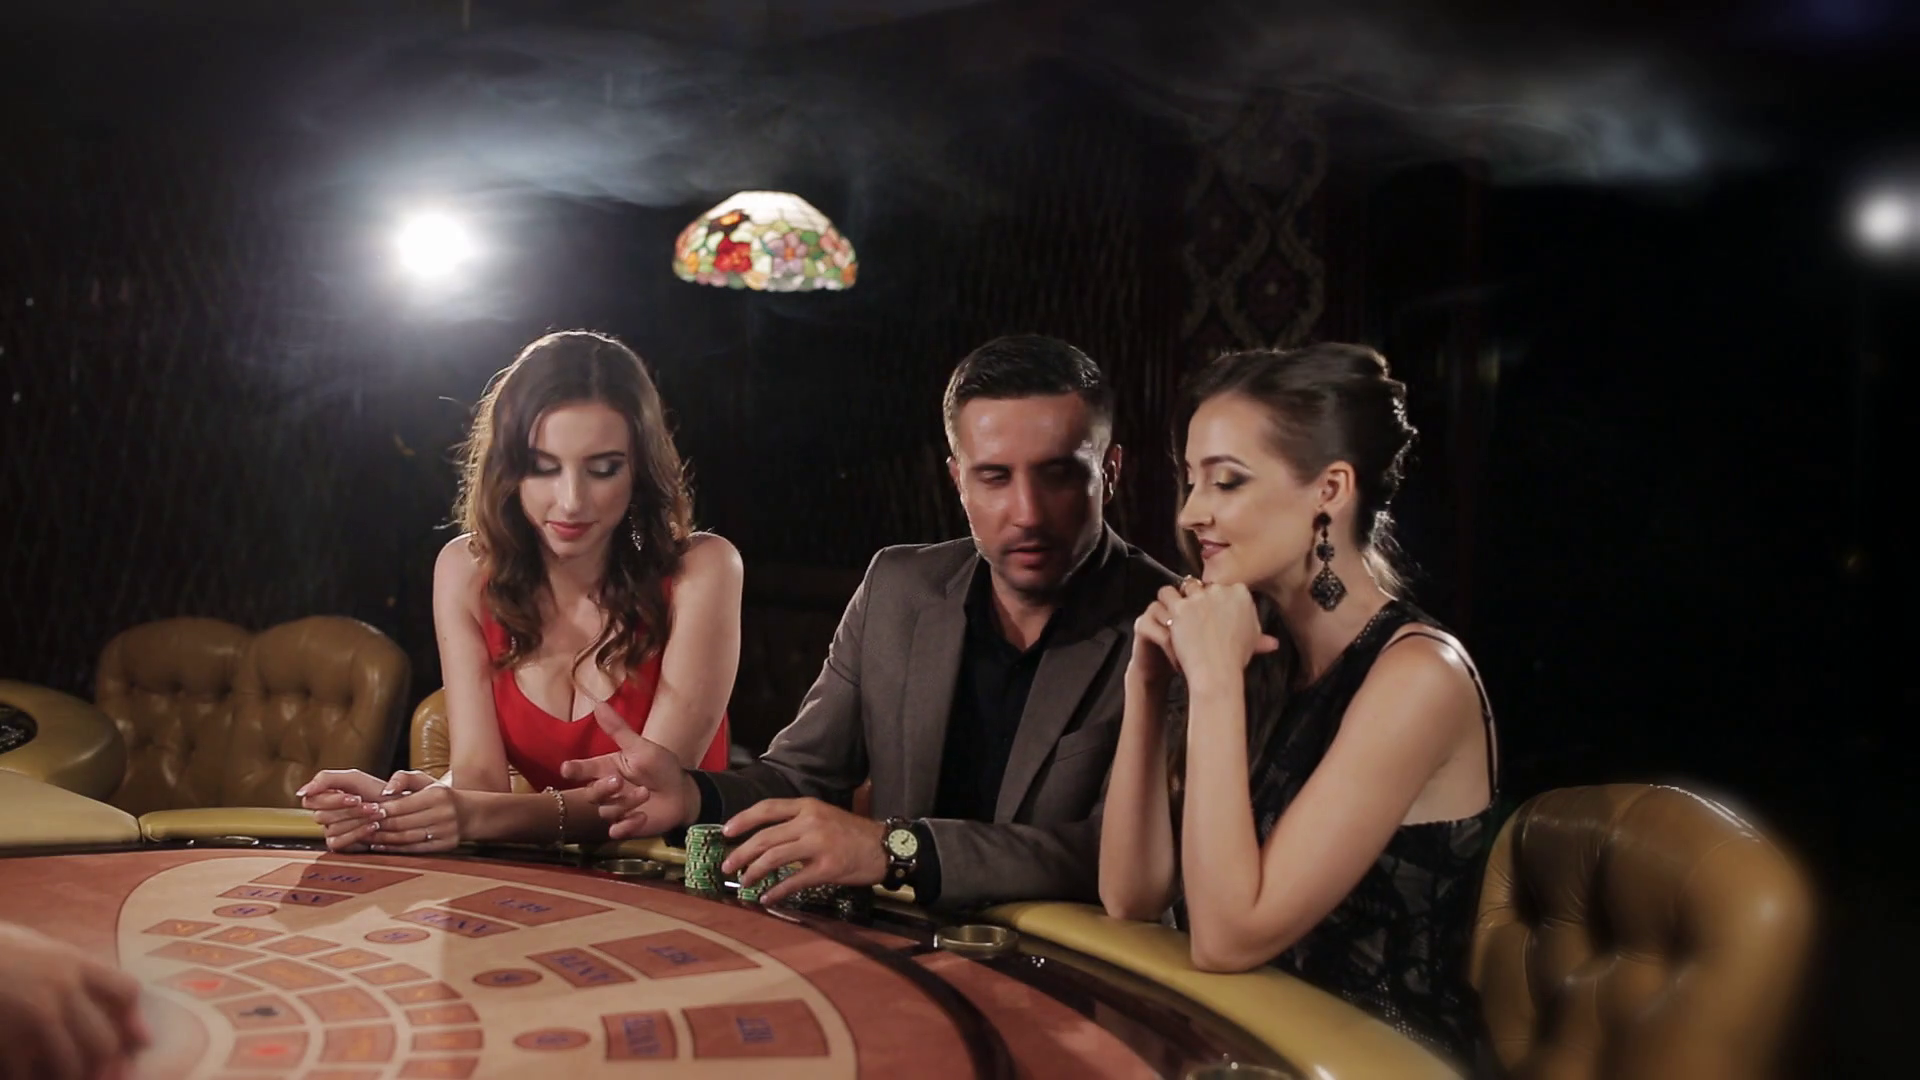 Богатій мужчина играет в покер в компании двух привлекательных девушек